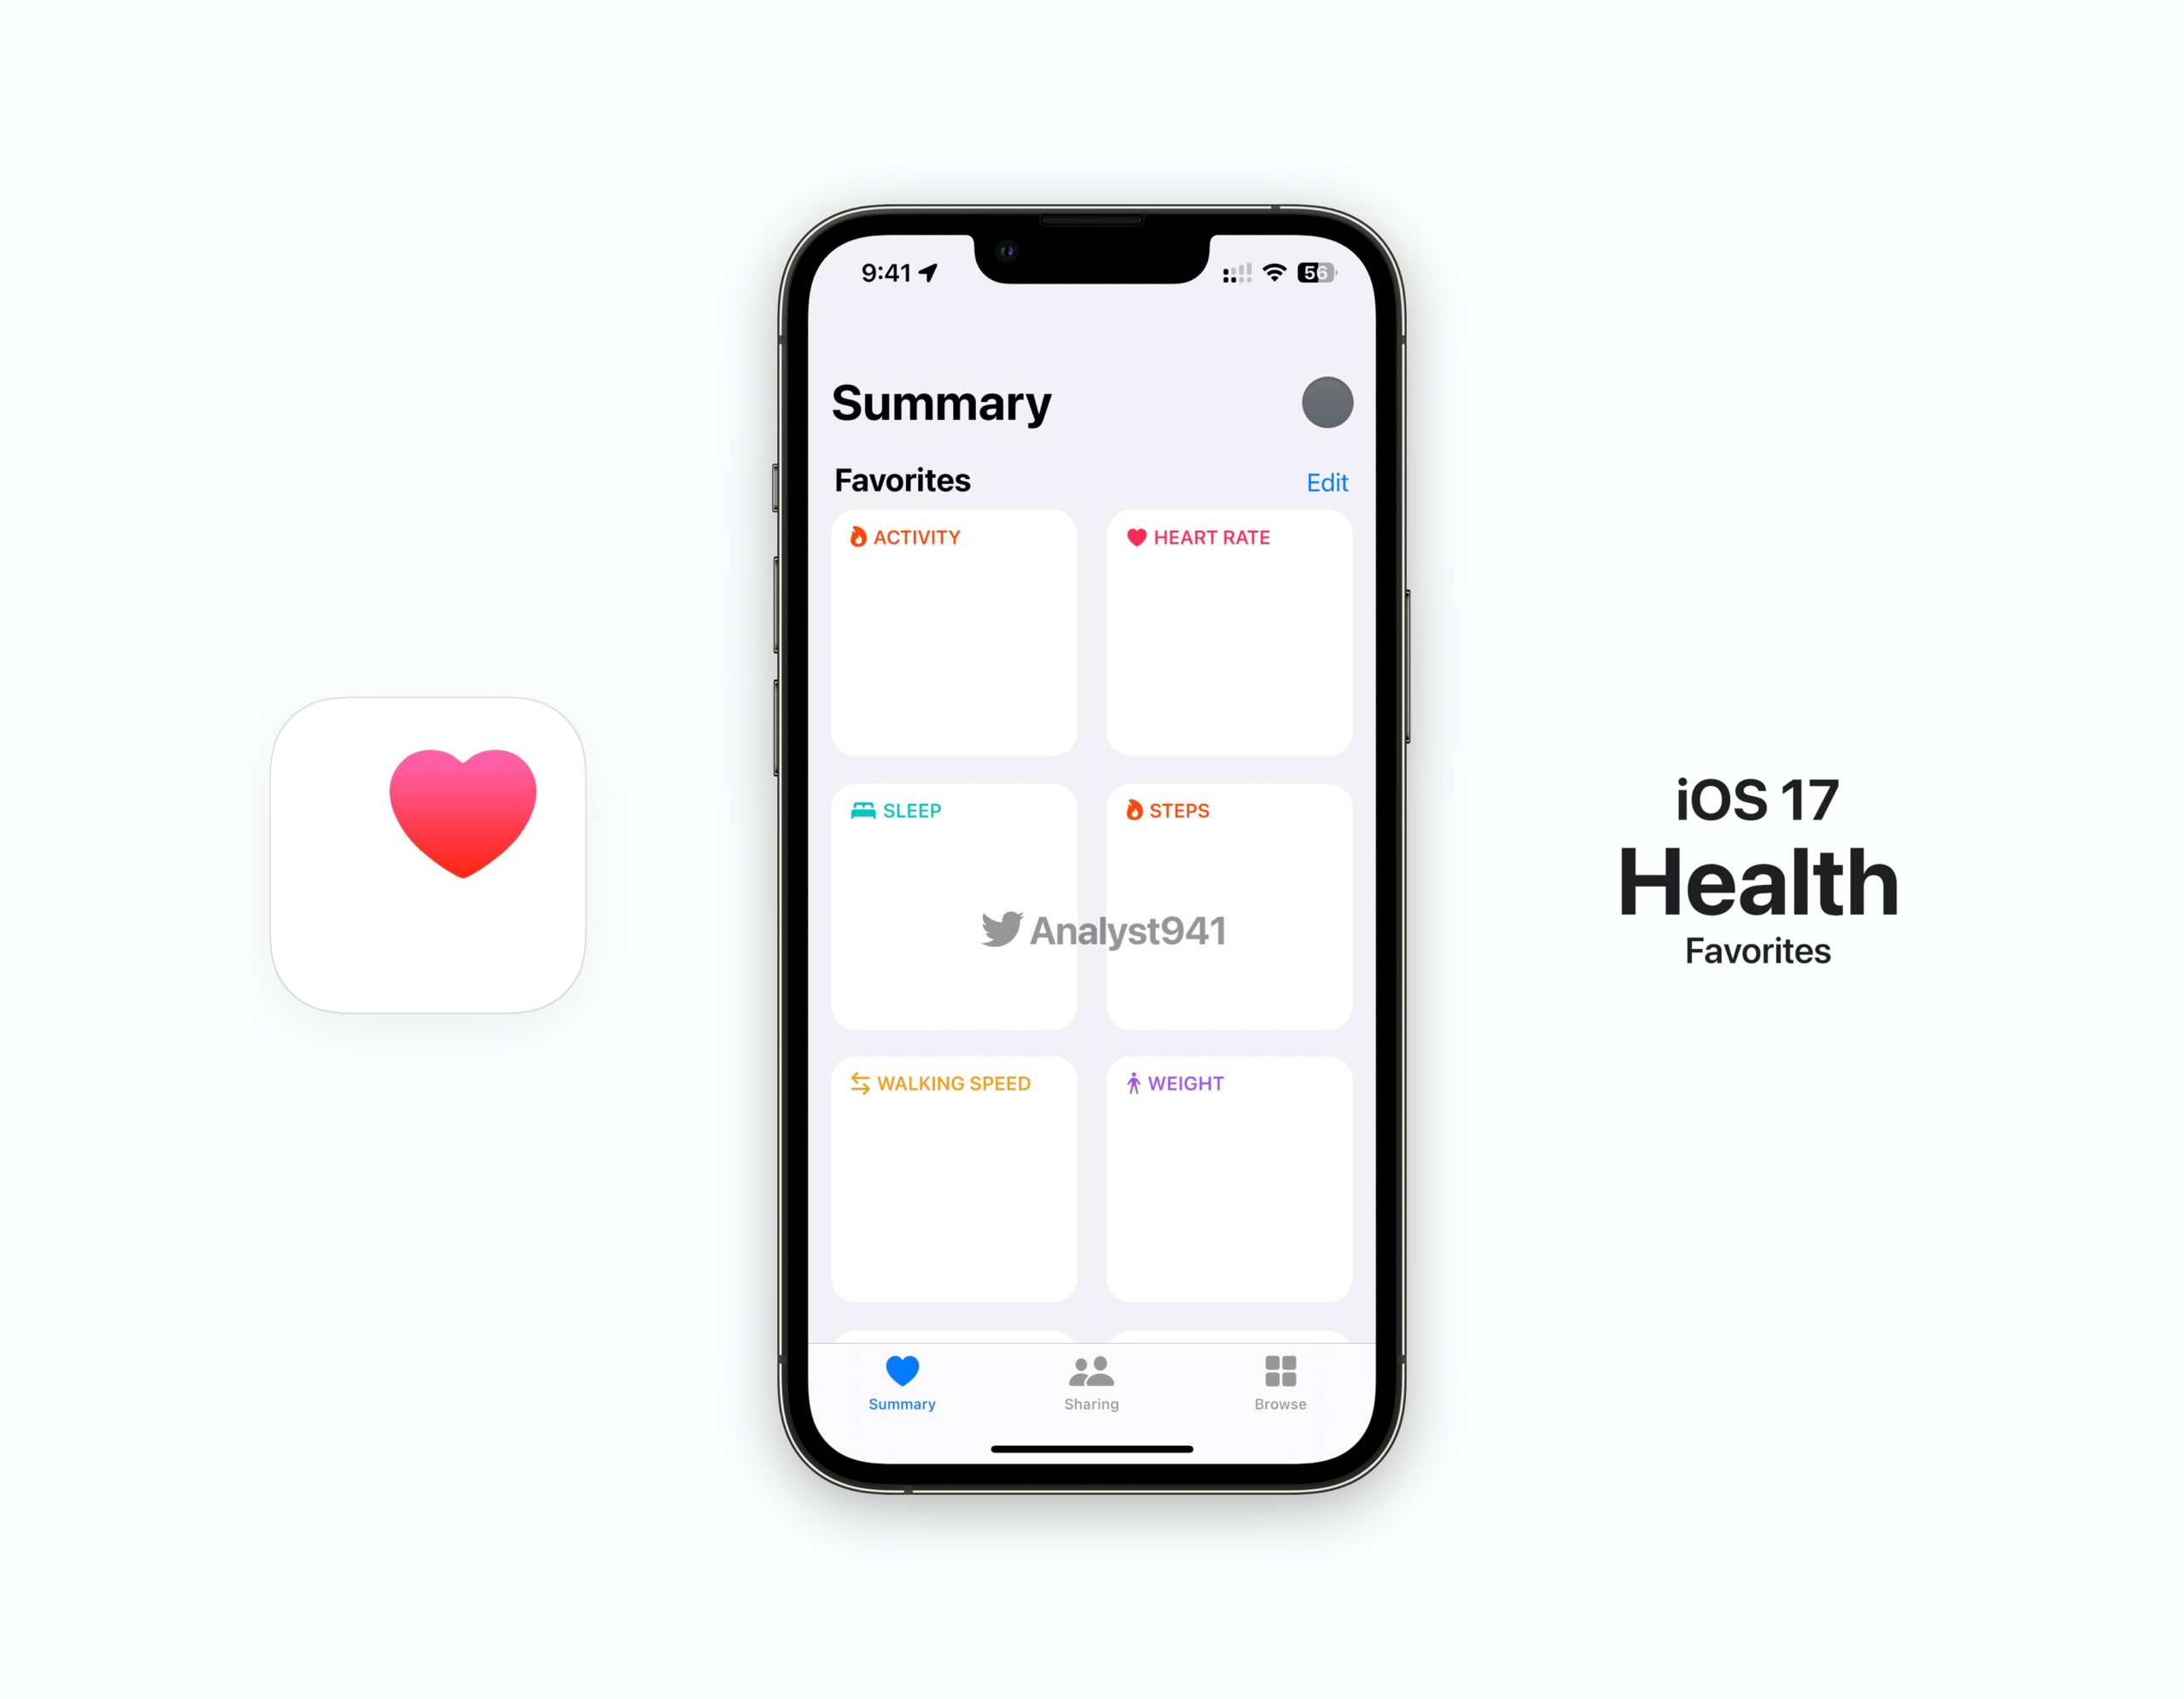 iOS 17 Health